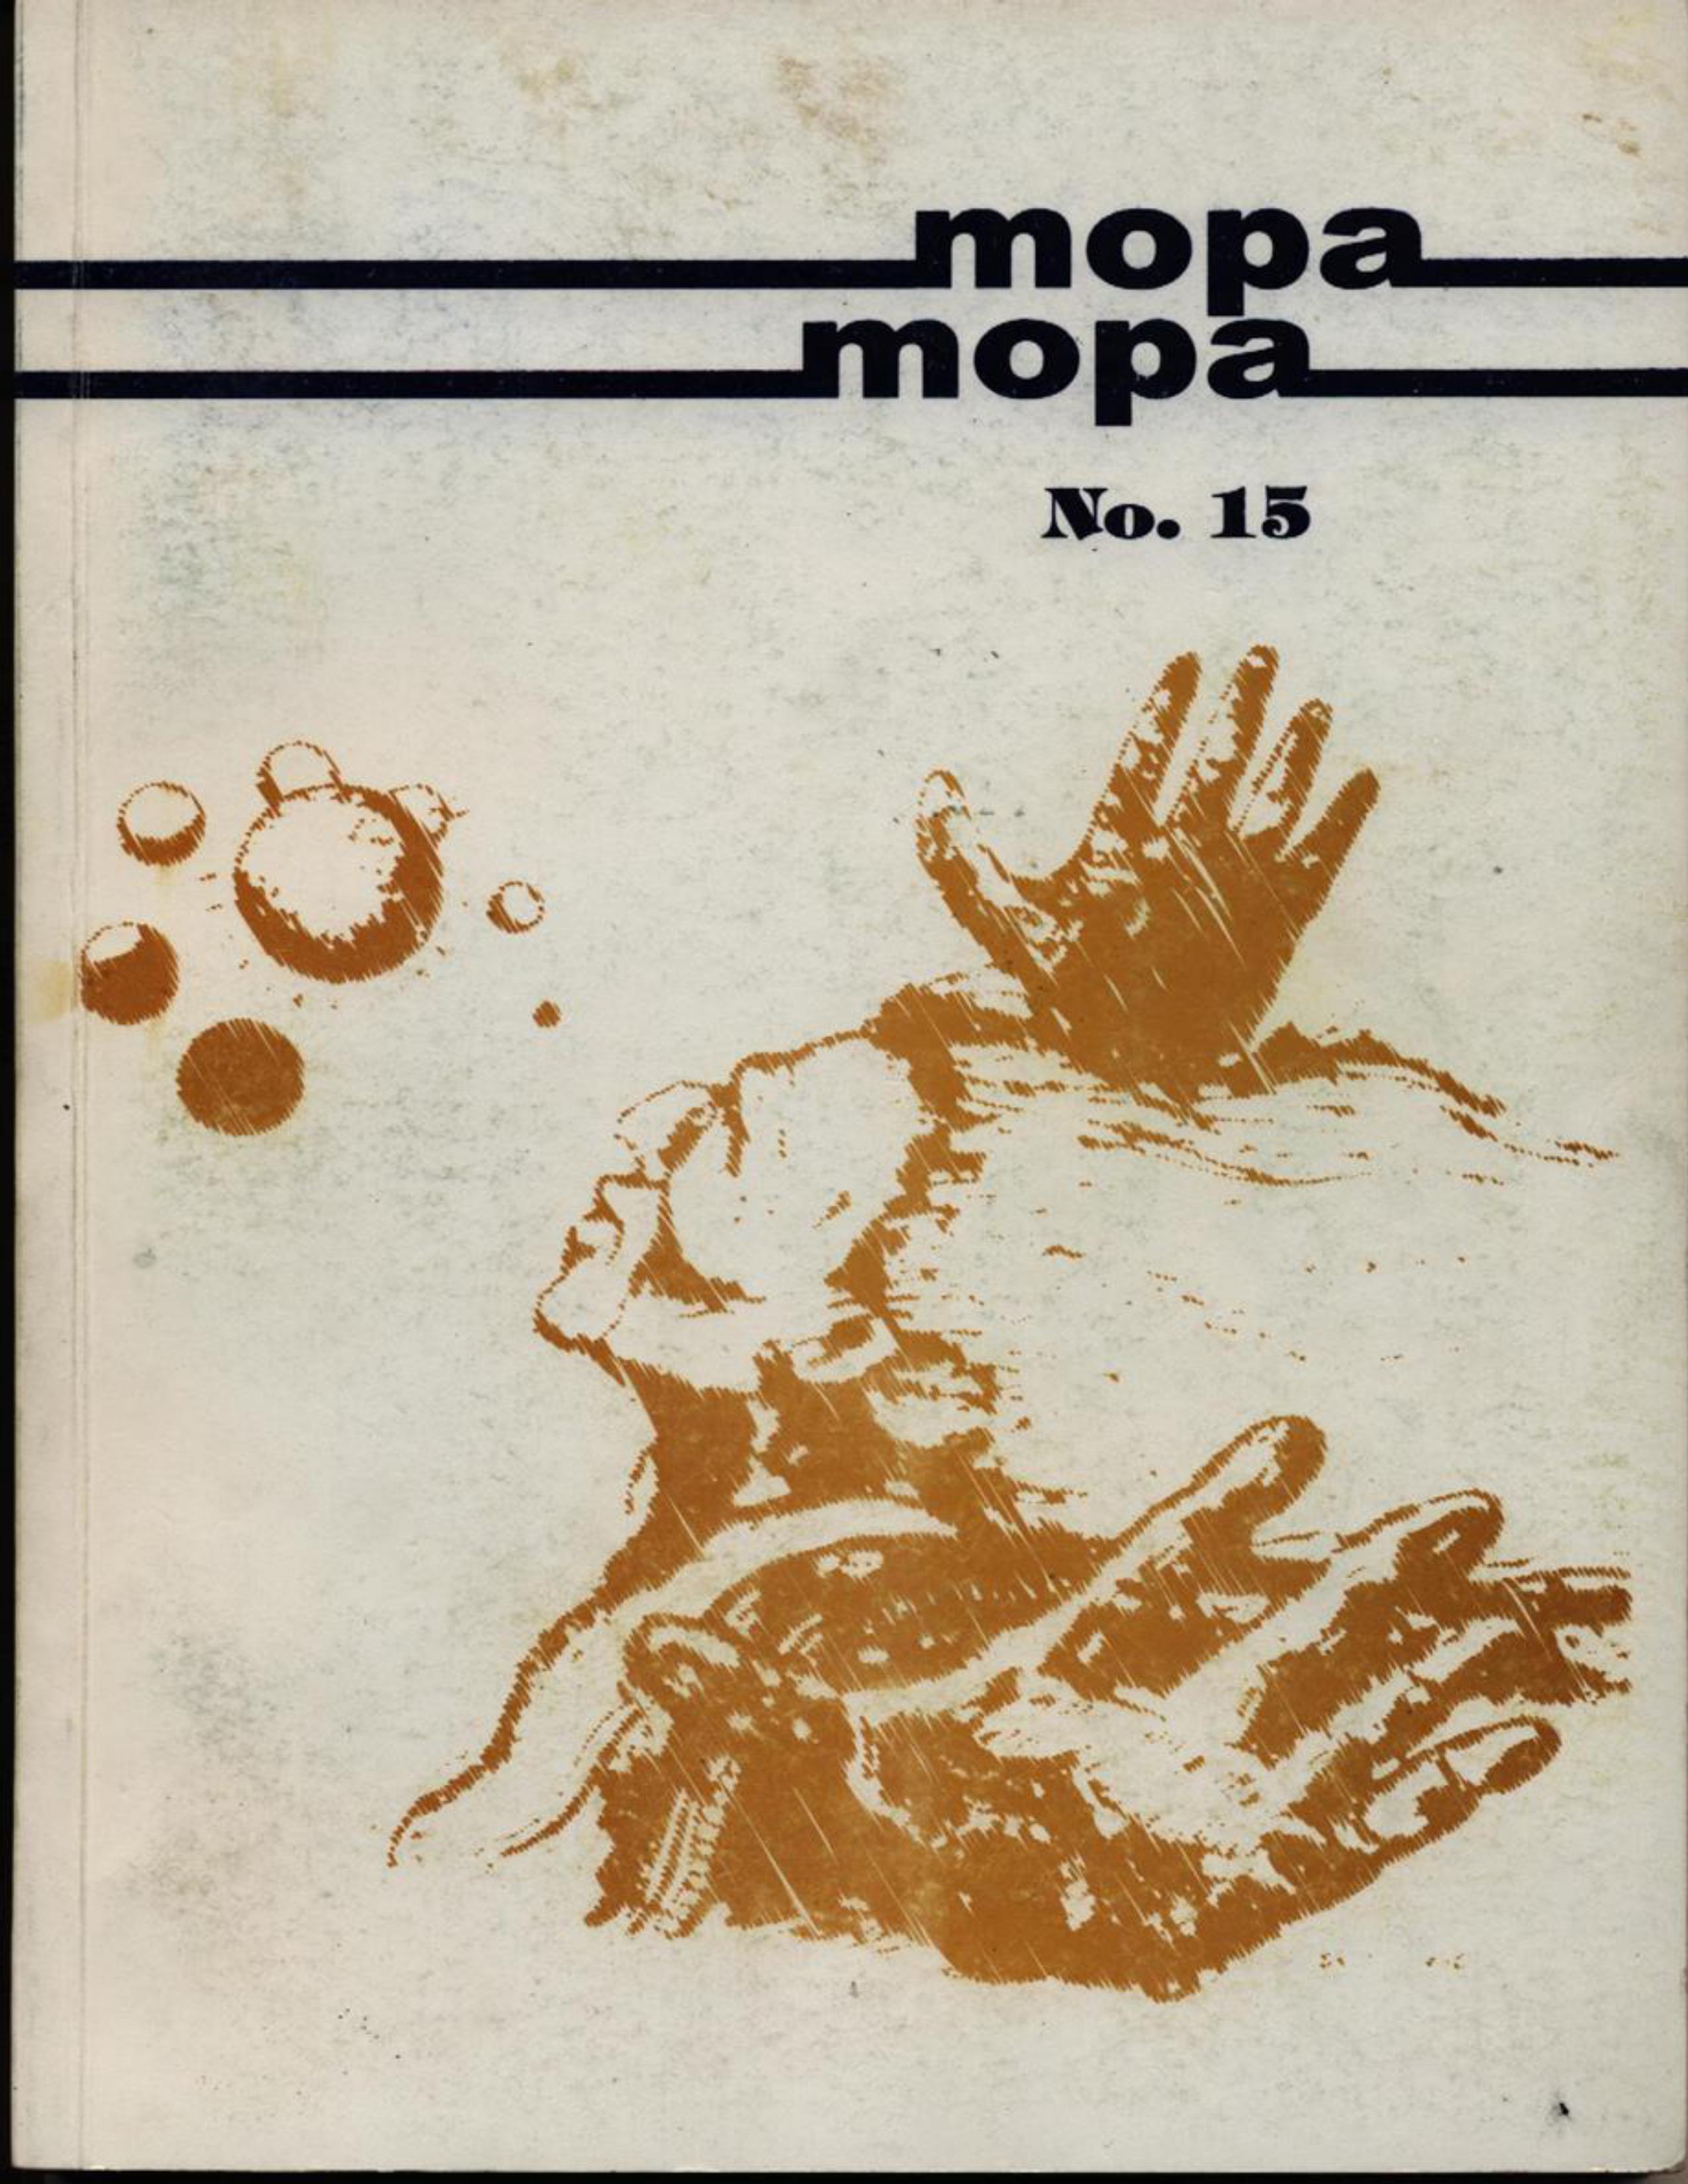 					Ver Vol. 1 Núm. 15 (2003): Revista Mopa Mopa 15
				